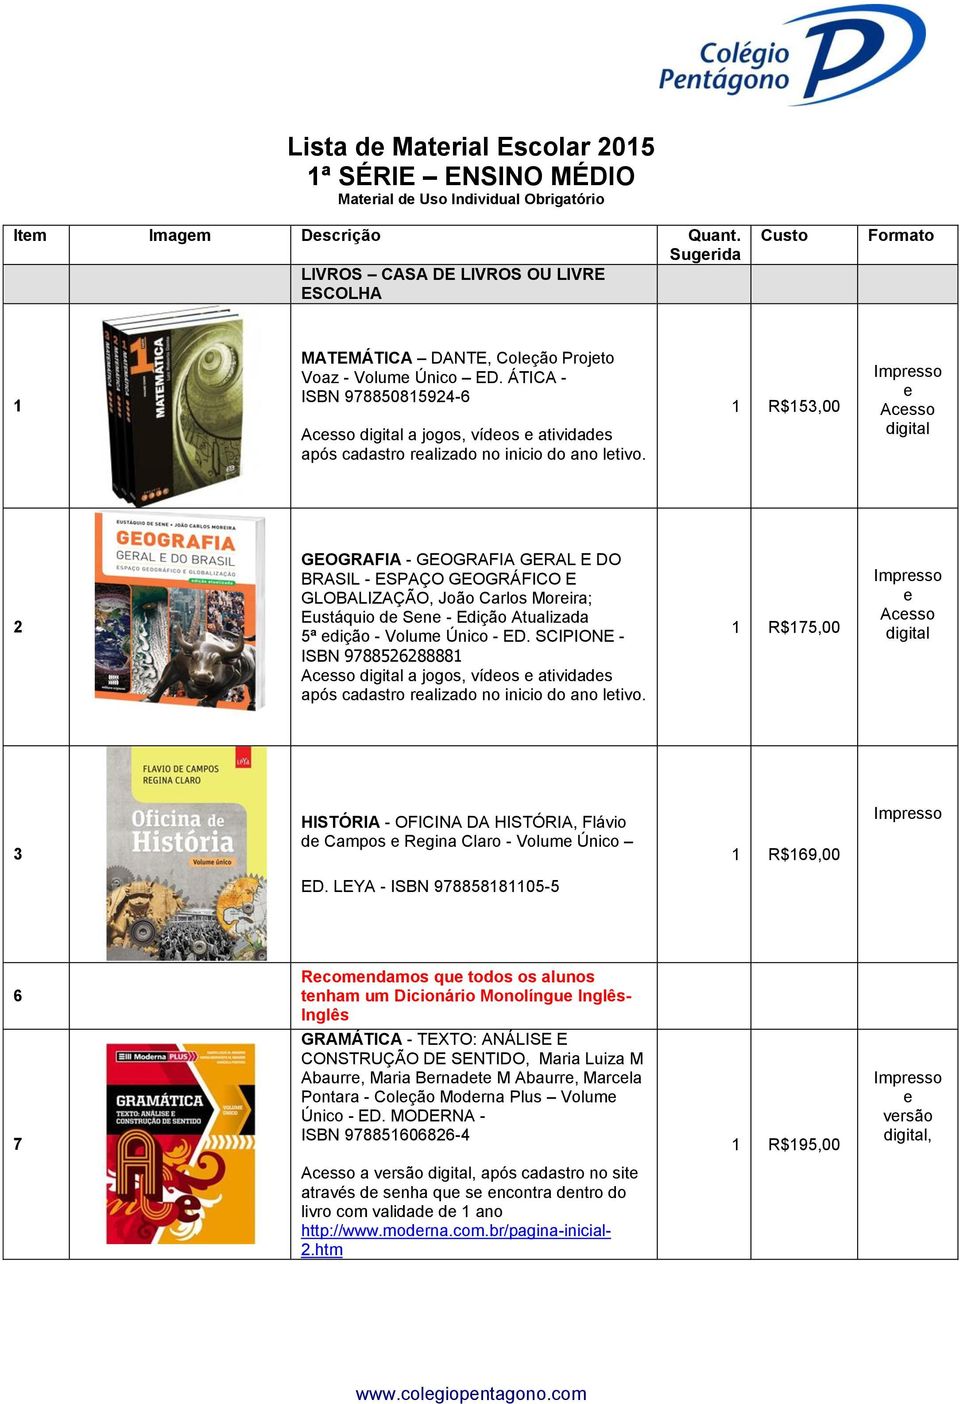 ÁTICA - ISBN 97885085924-6 Acsso a jogos, vídos atividads após cadastro ralizado no inicio do ano ltivo.